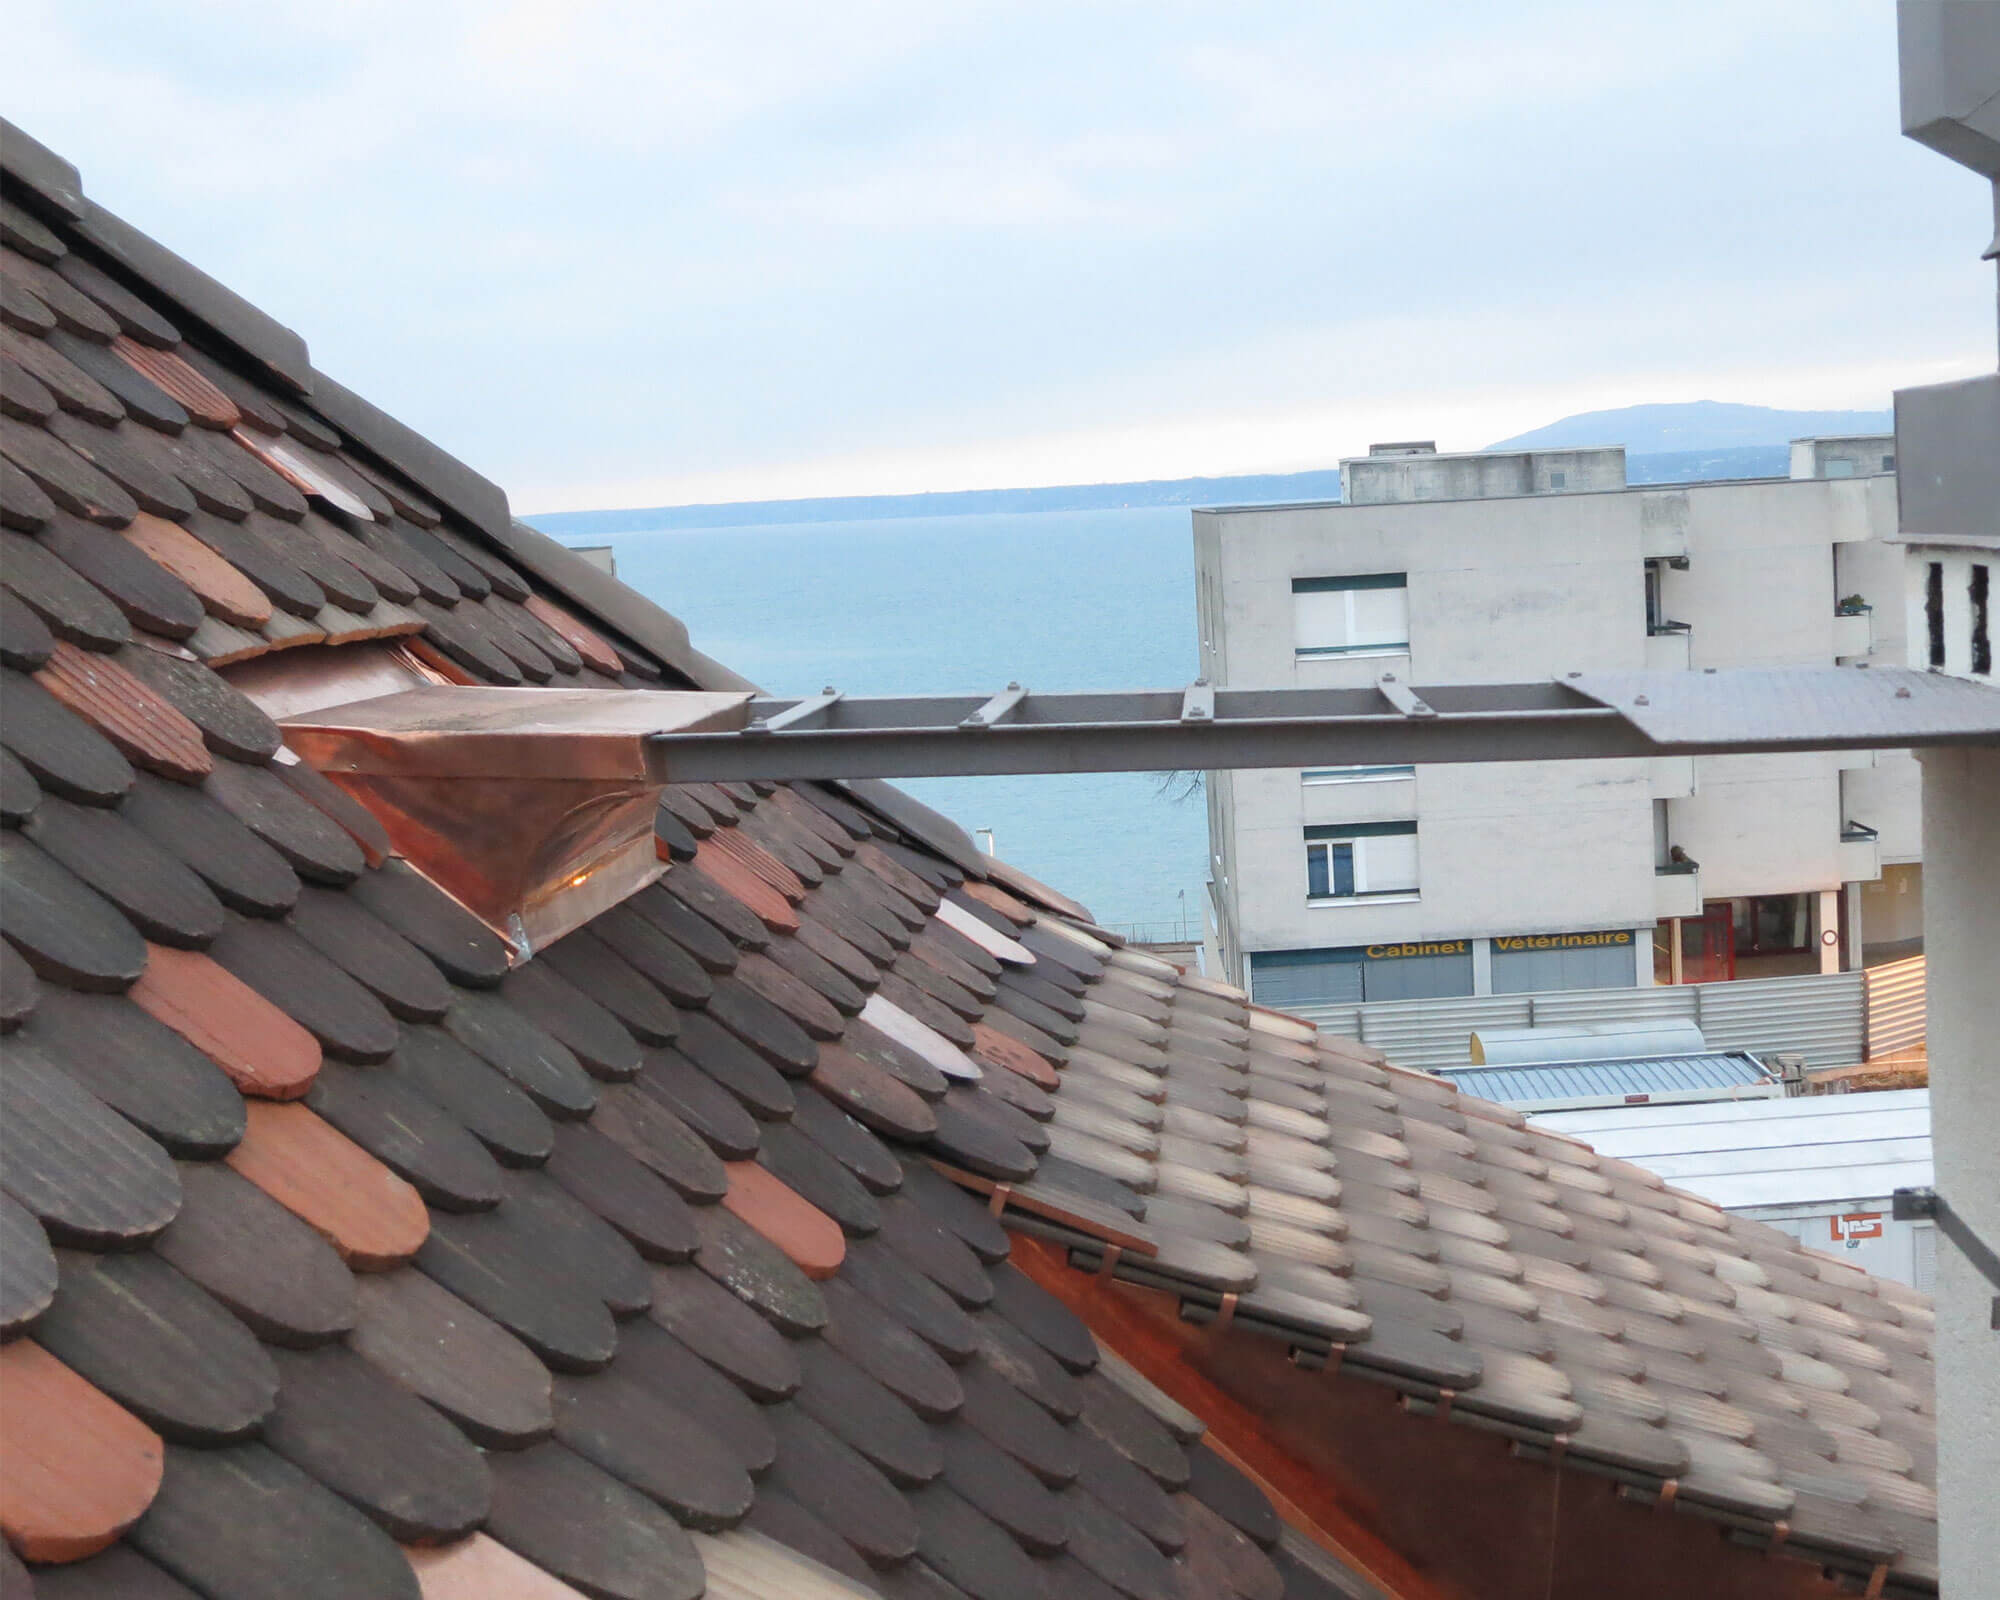 Couverture de toiture à Genève - Kroepfli Toiture